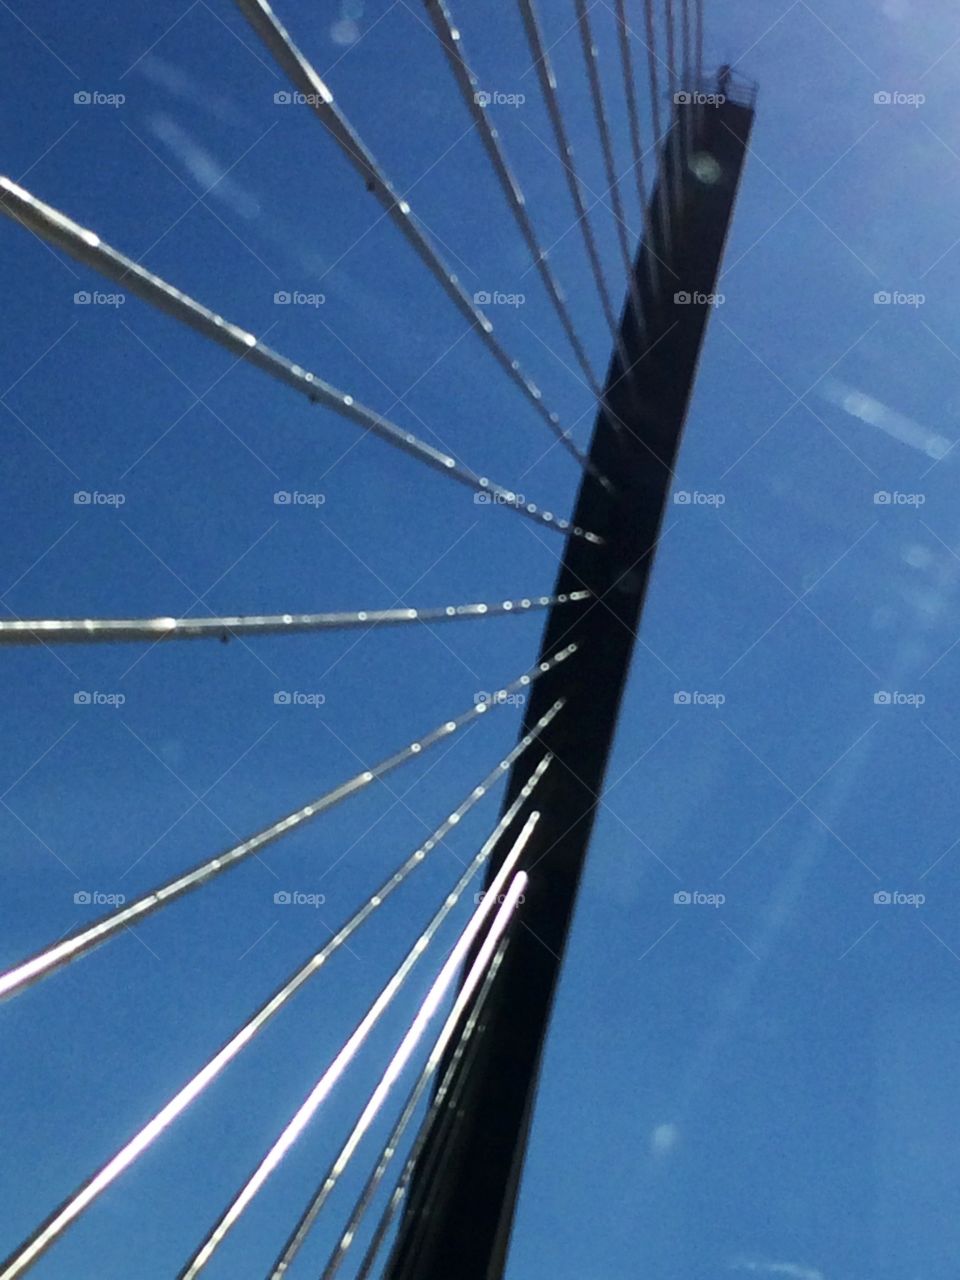 No Person, Sky, Bridge, Connection, Steel